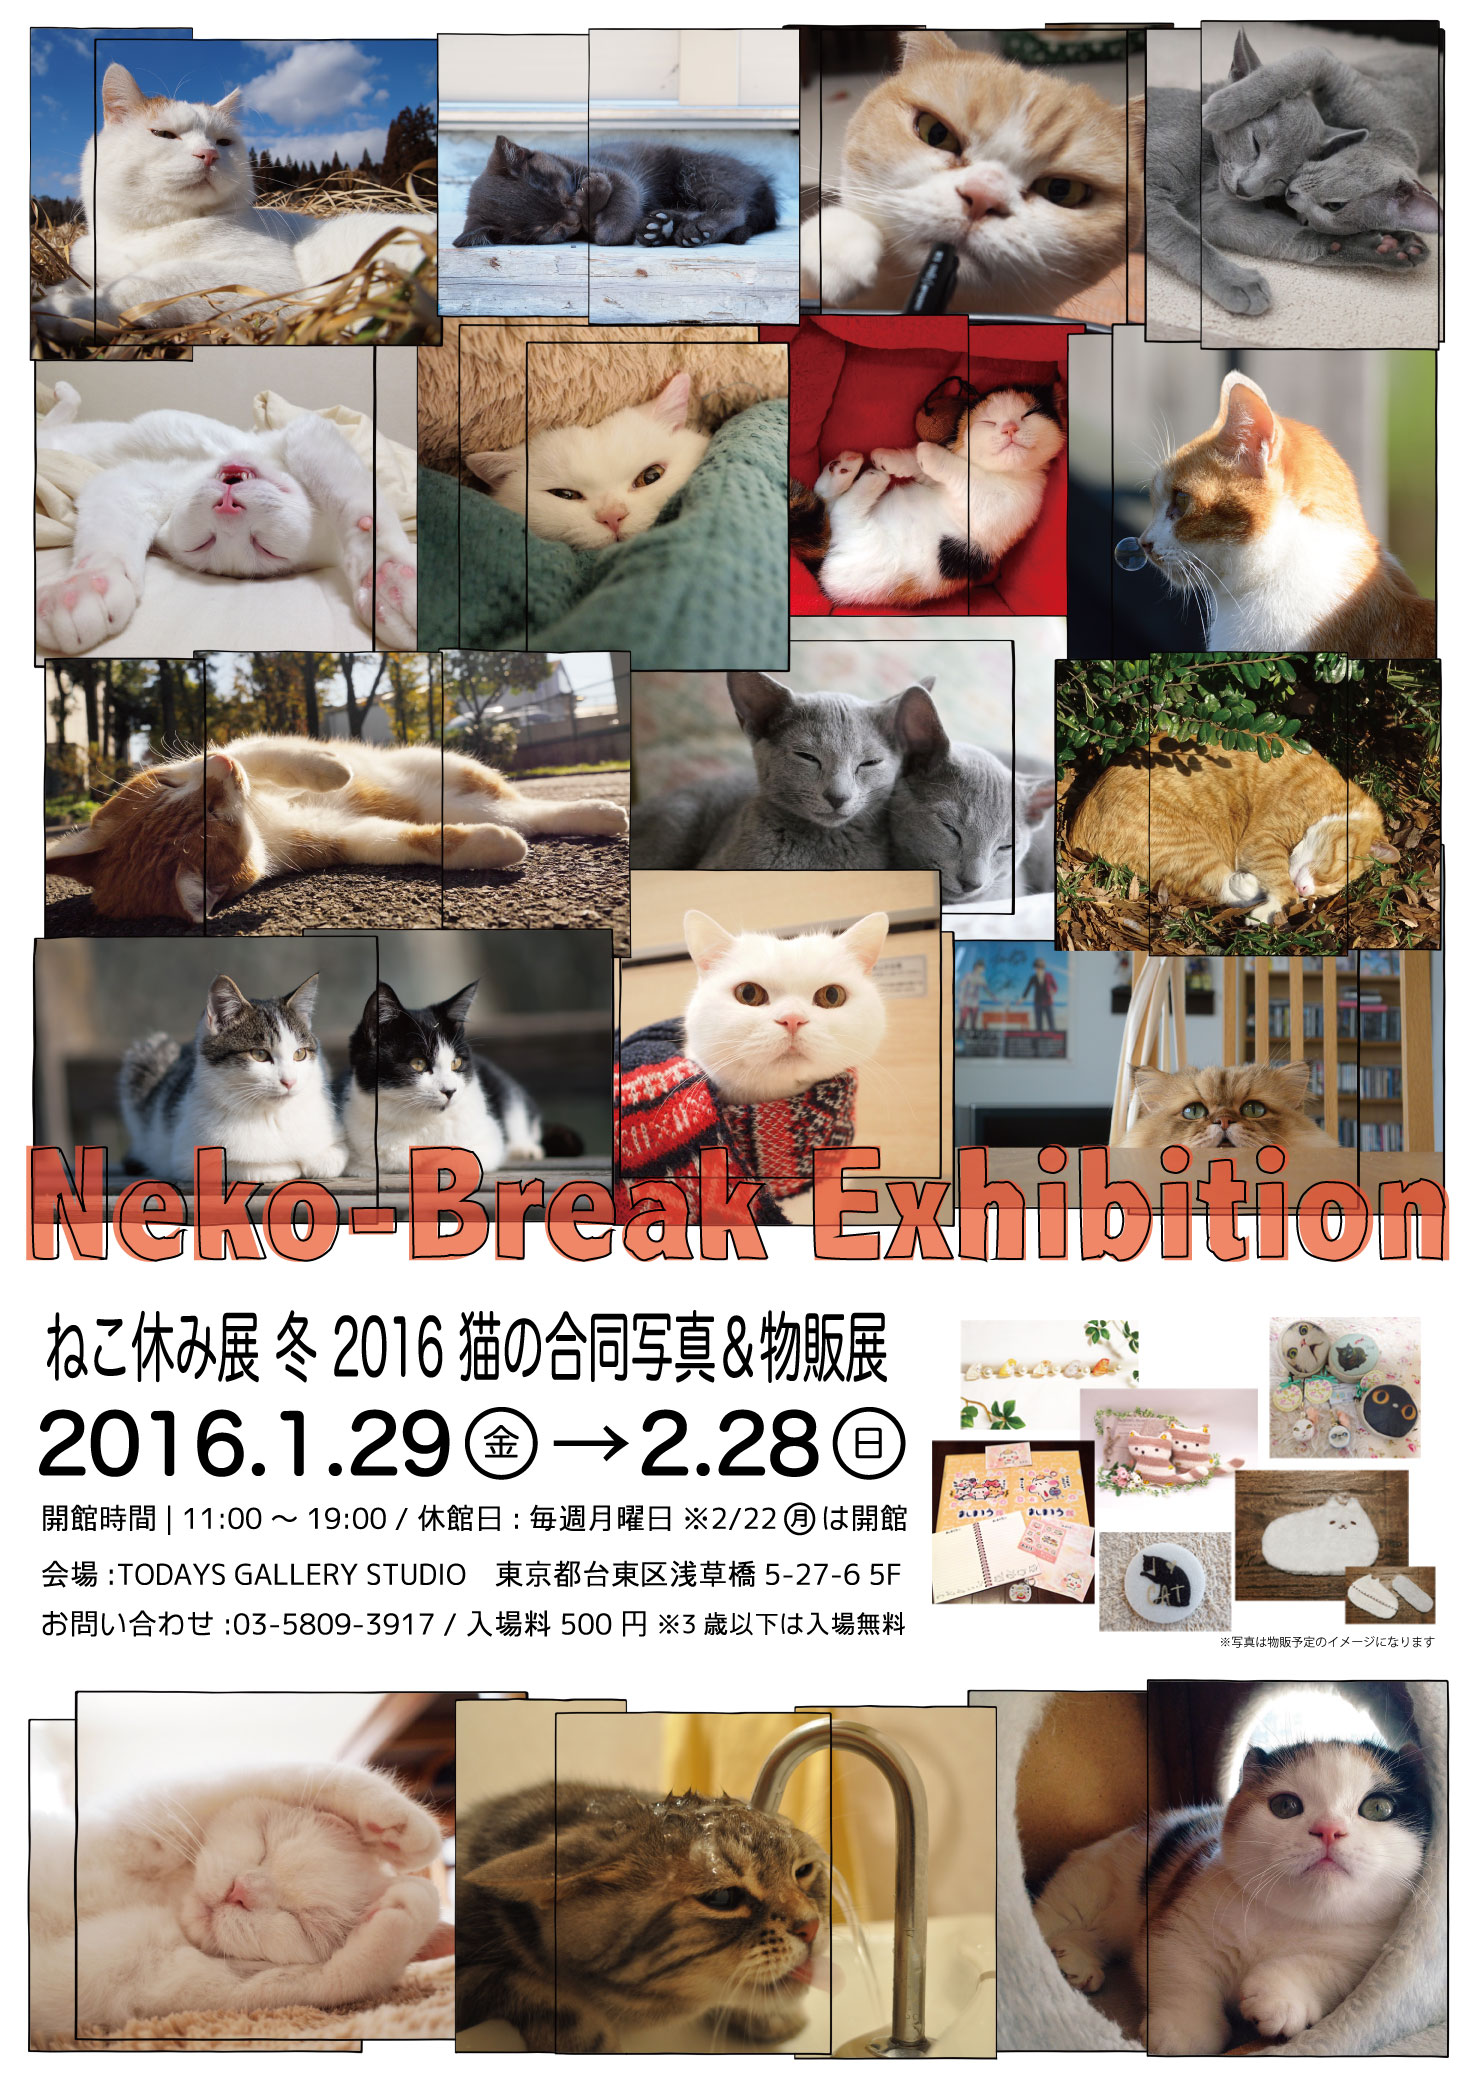 ねこ休み展 冬 16 猫の写真展 物販展 台東区浅草橋のギャラリー Todays Gallery Studio